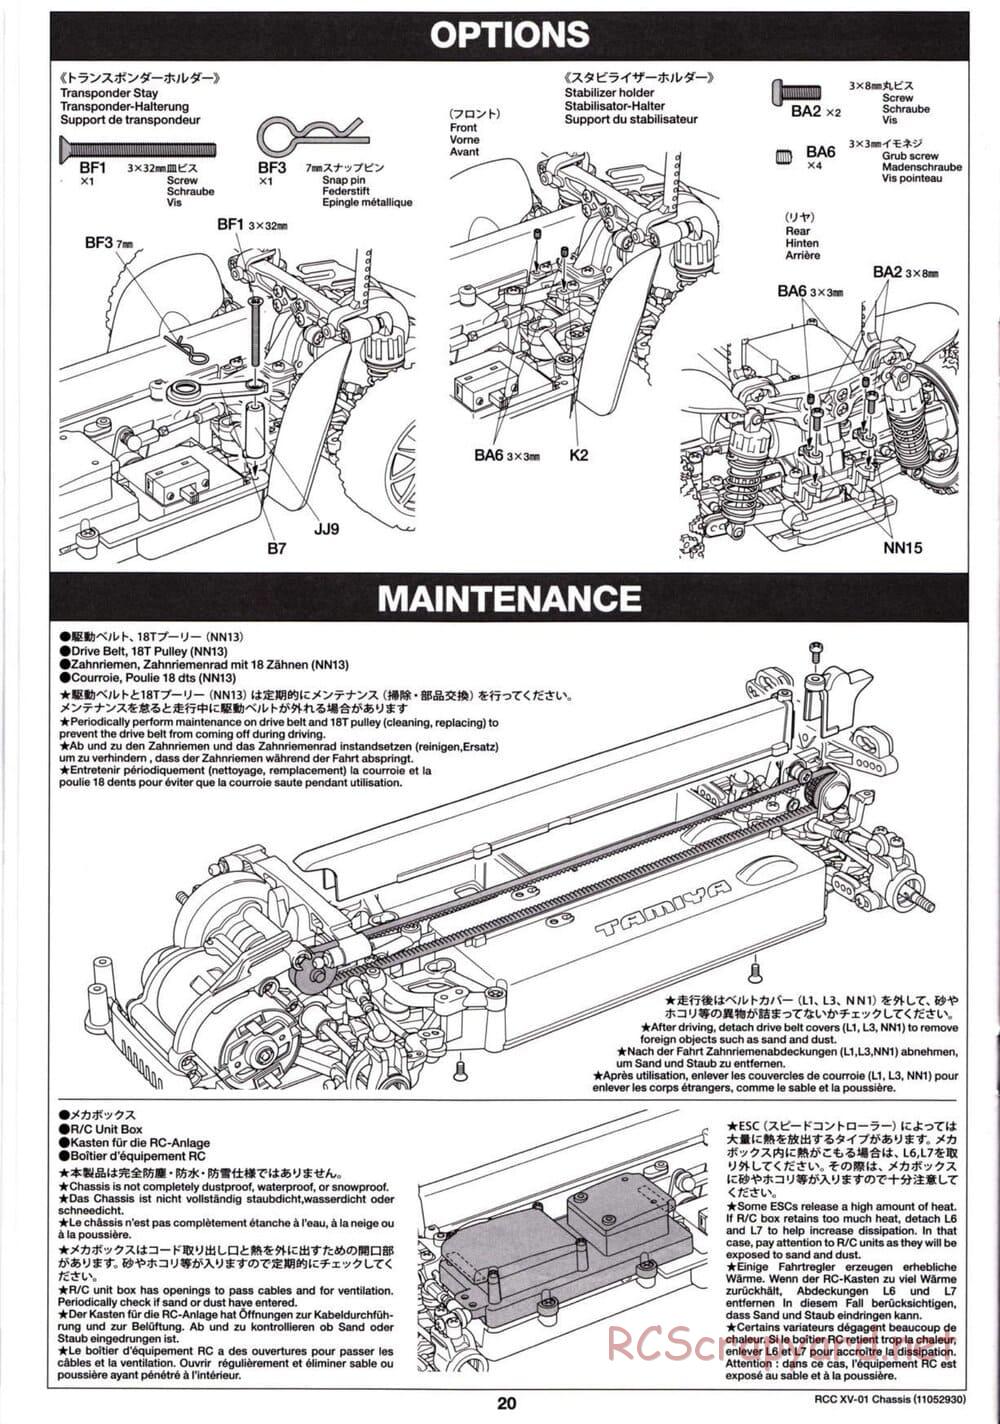 Tamiya - XV-01 Chassis - Manual - Page 21